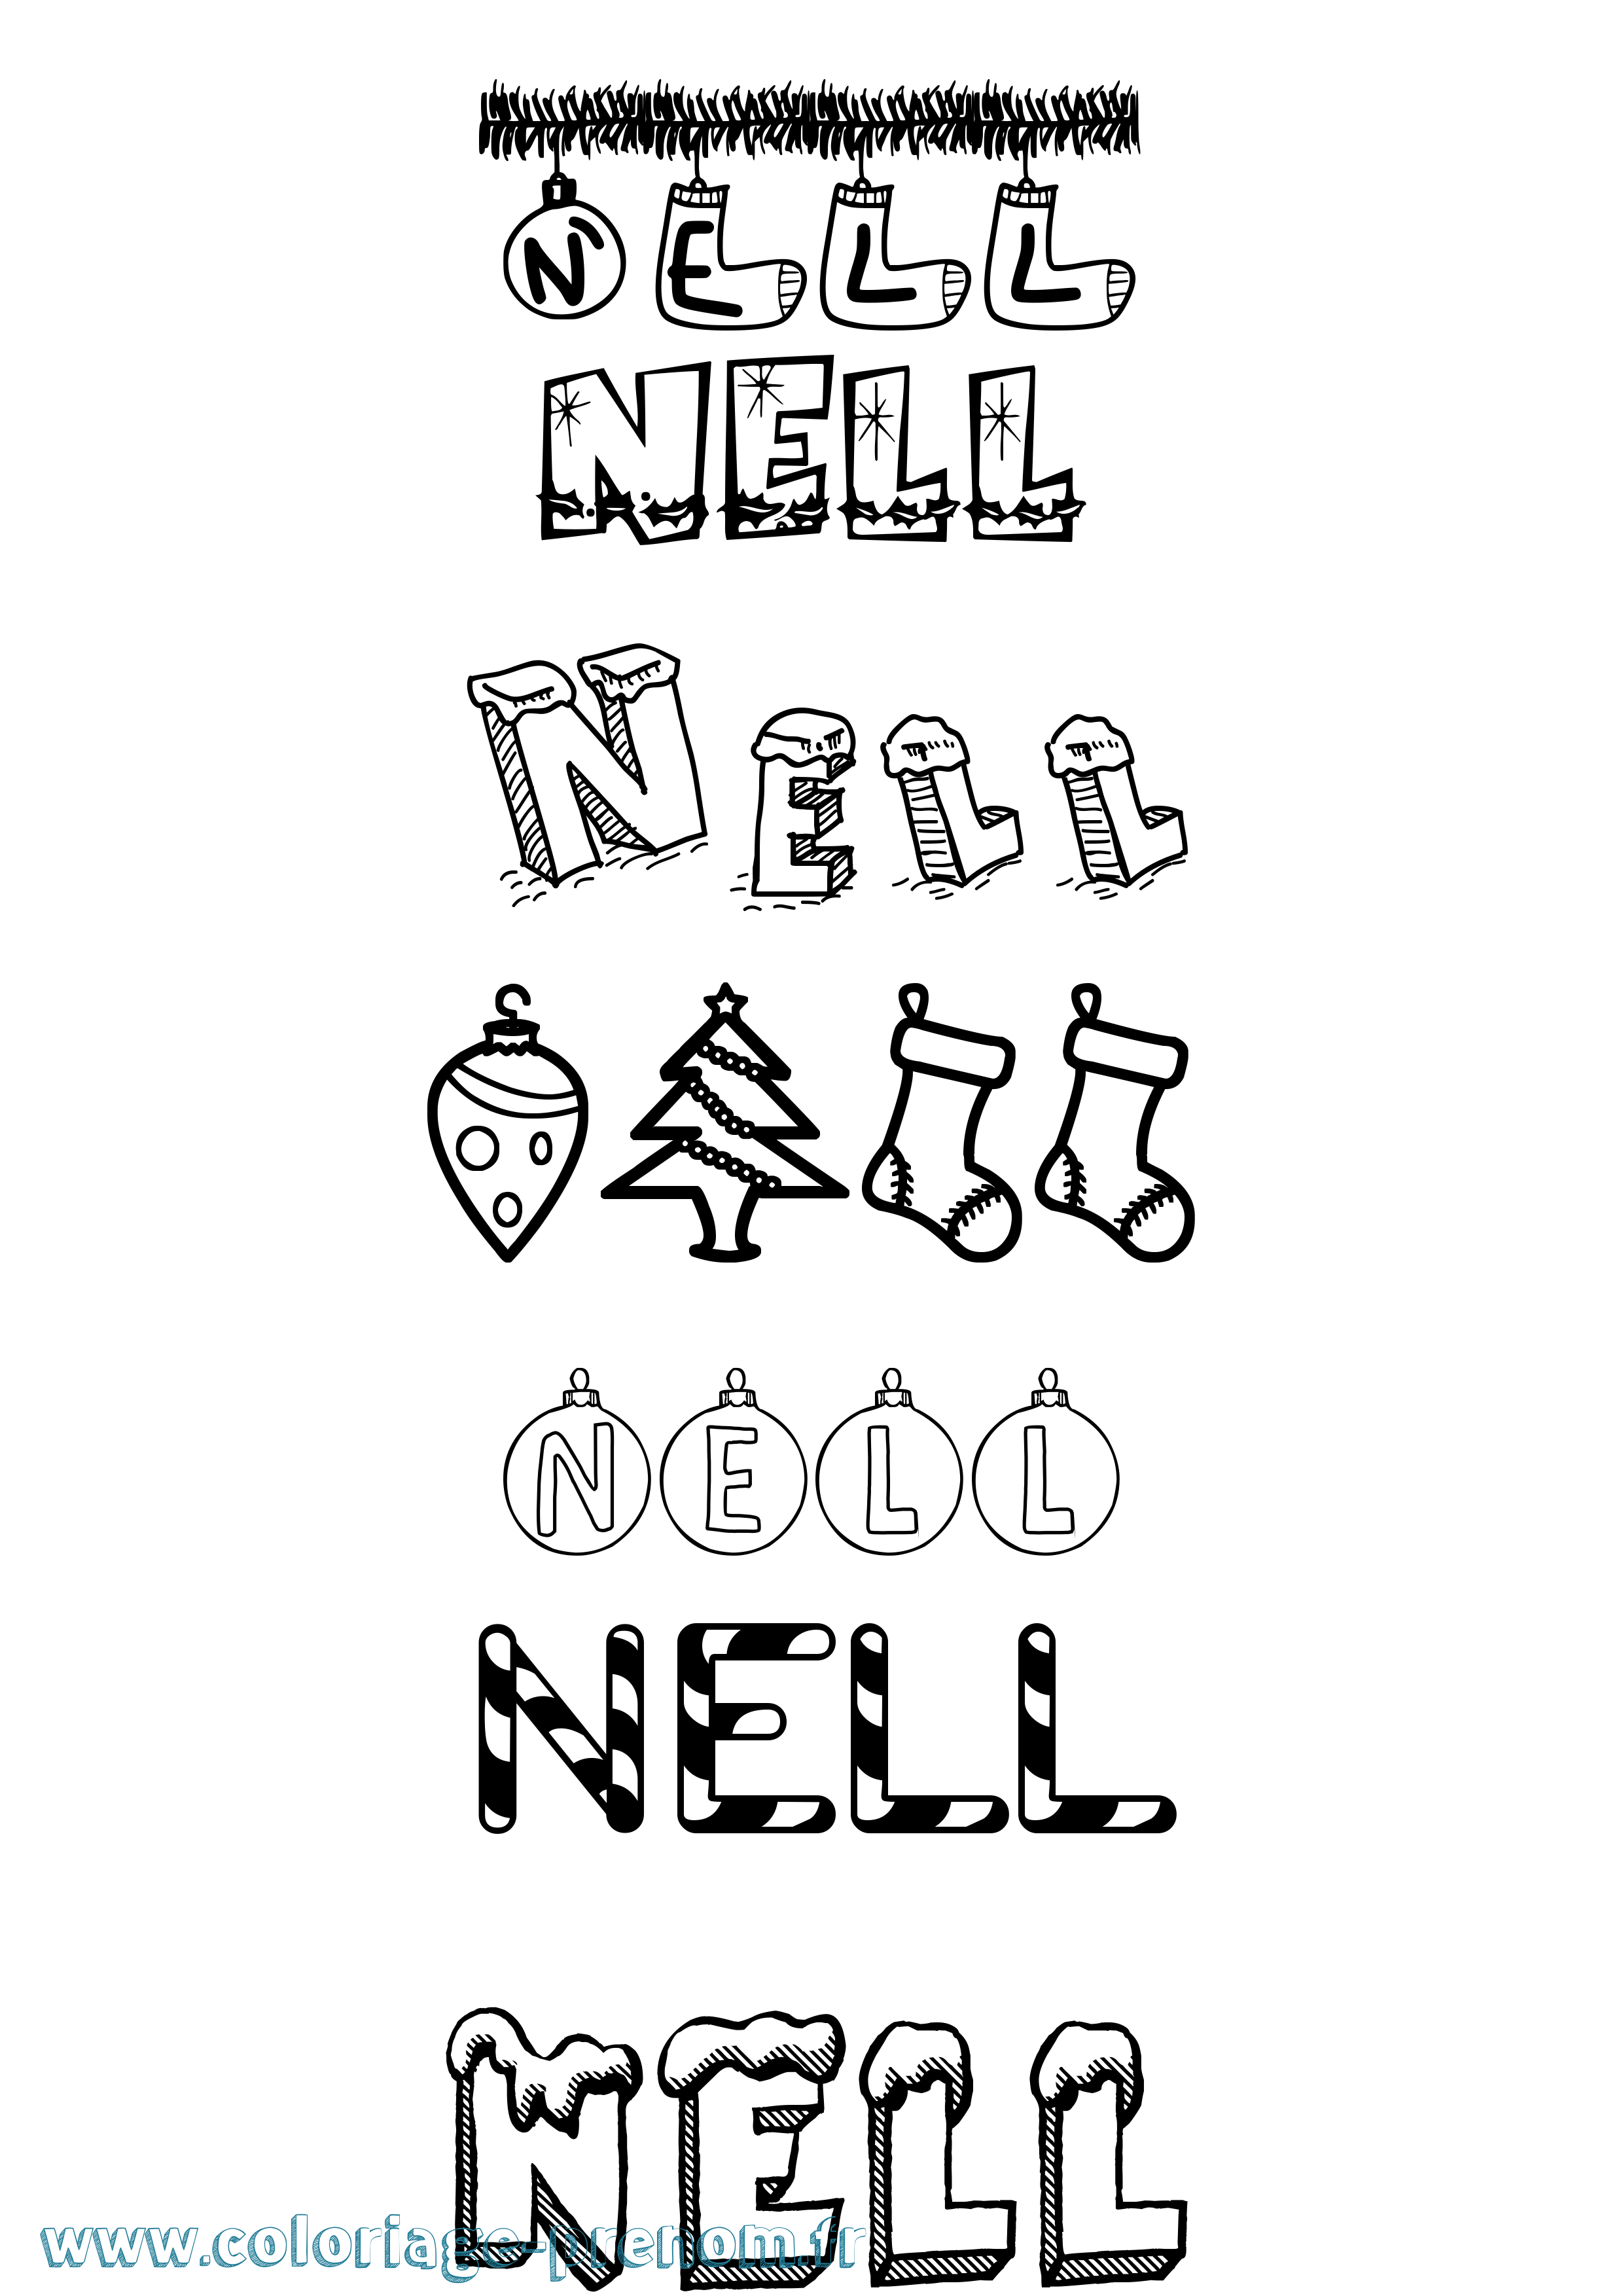 Coloriage prénom Nell